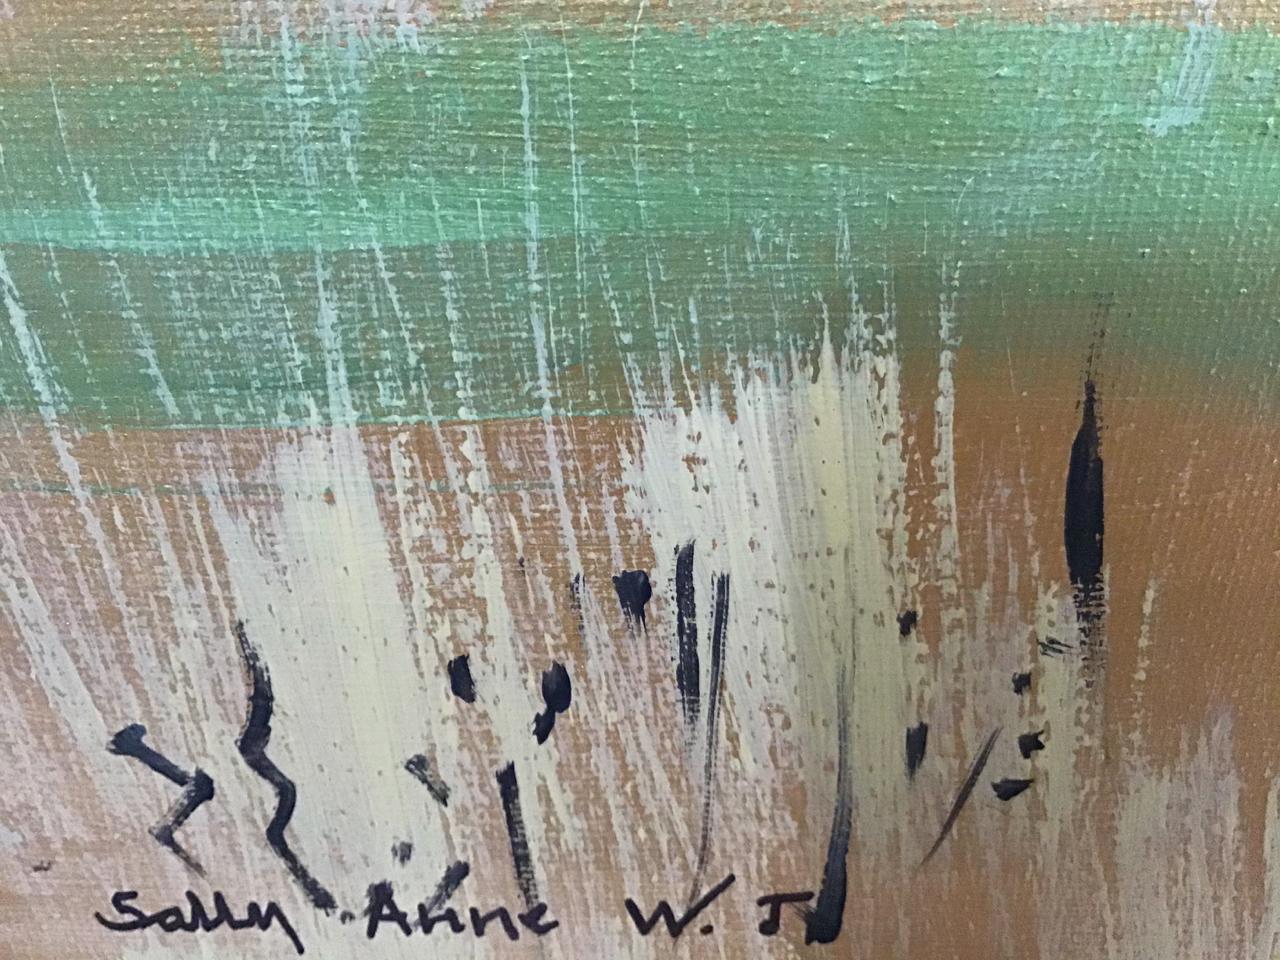 Sally Anne Wake Jone & Peter
Anticiper l'automne (nous faire passer d'un été trop chaud à un hiver qui pourrait être trop froid).
Acrylique sur toile, 61 x 91 cm
Peinture de paysage, peinte 